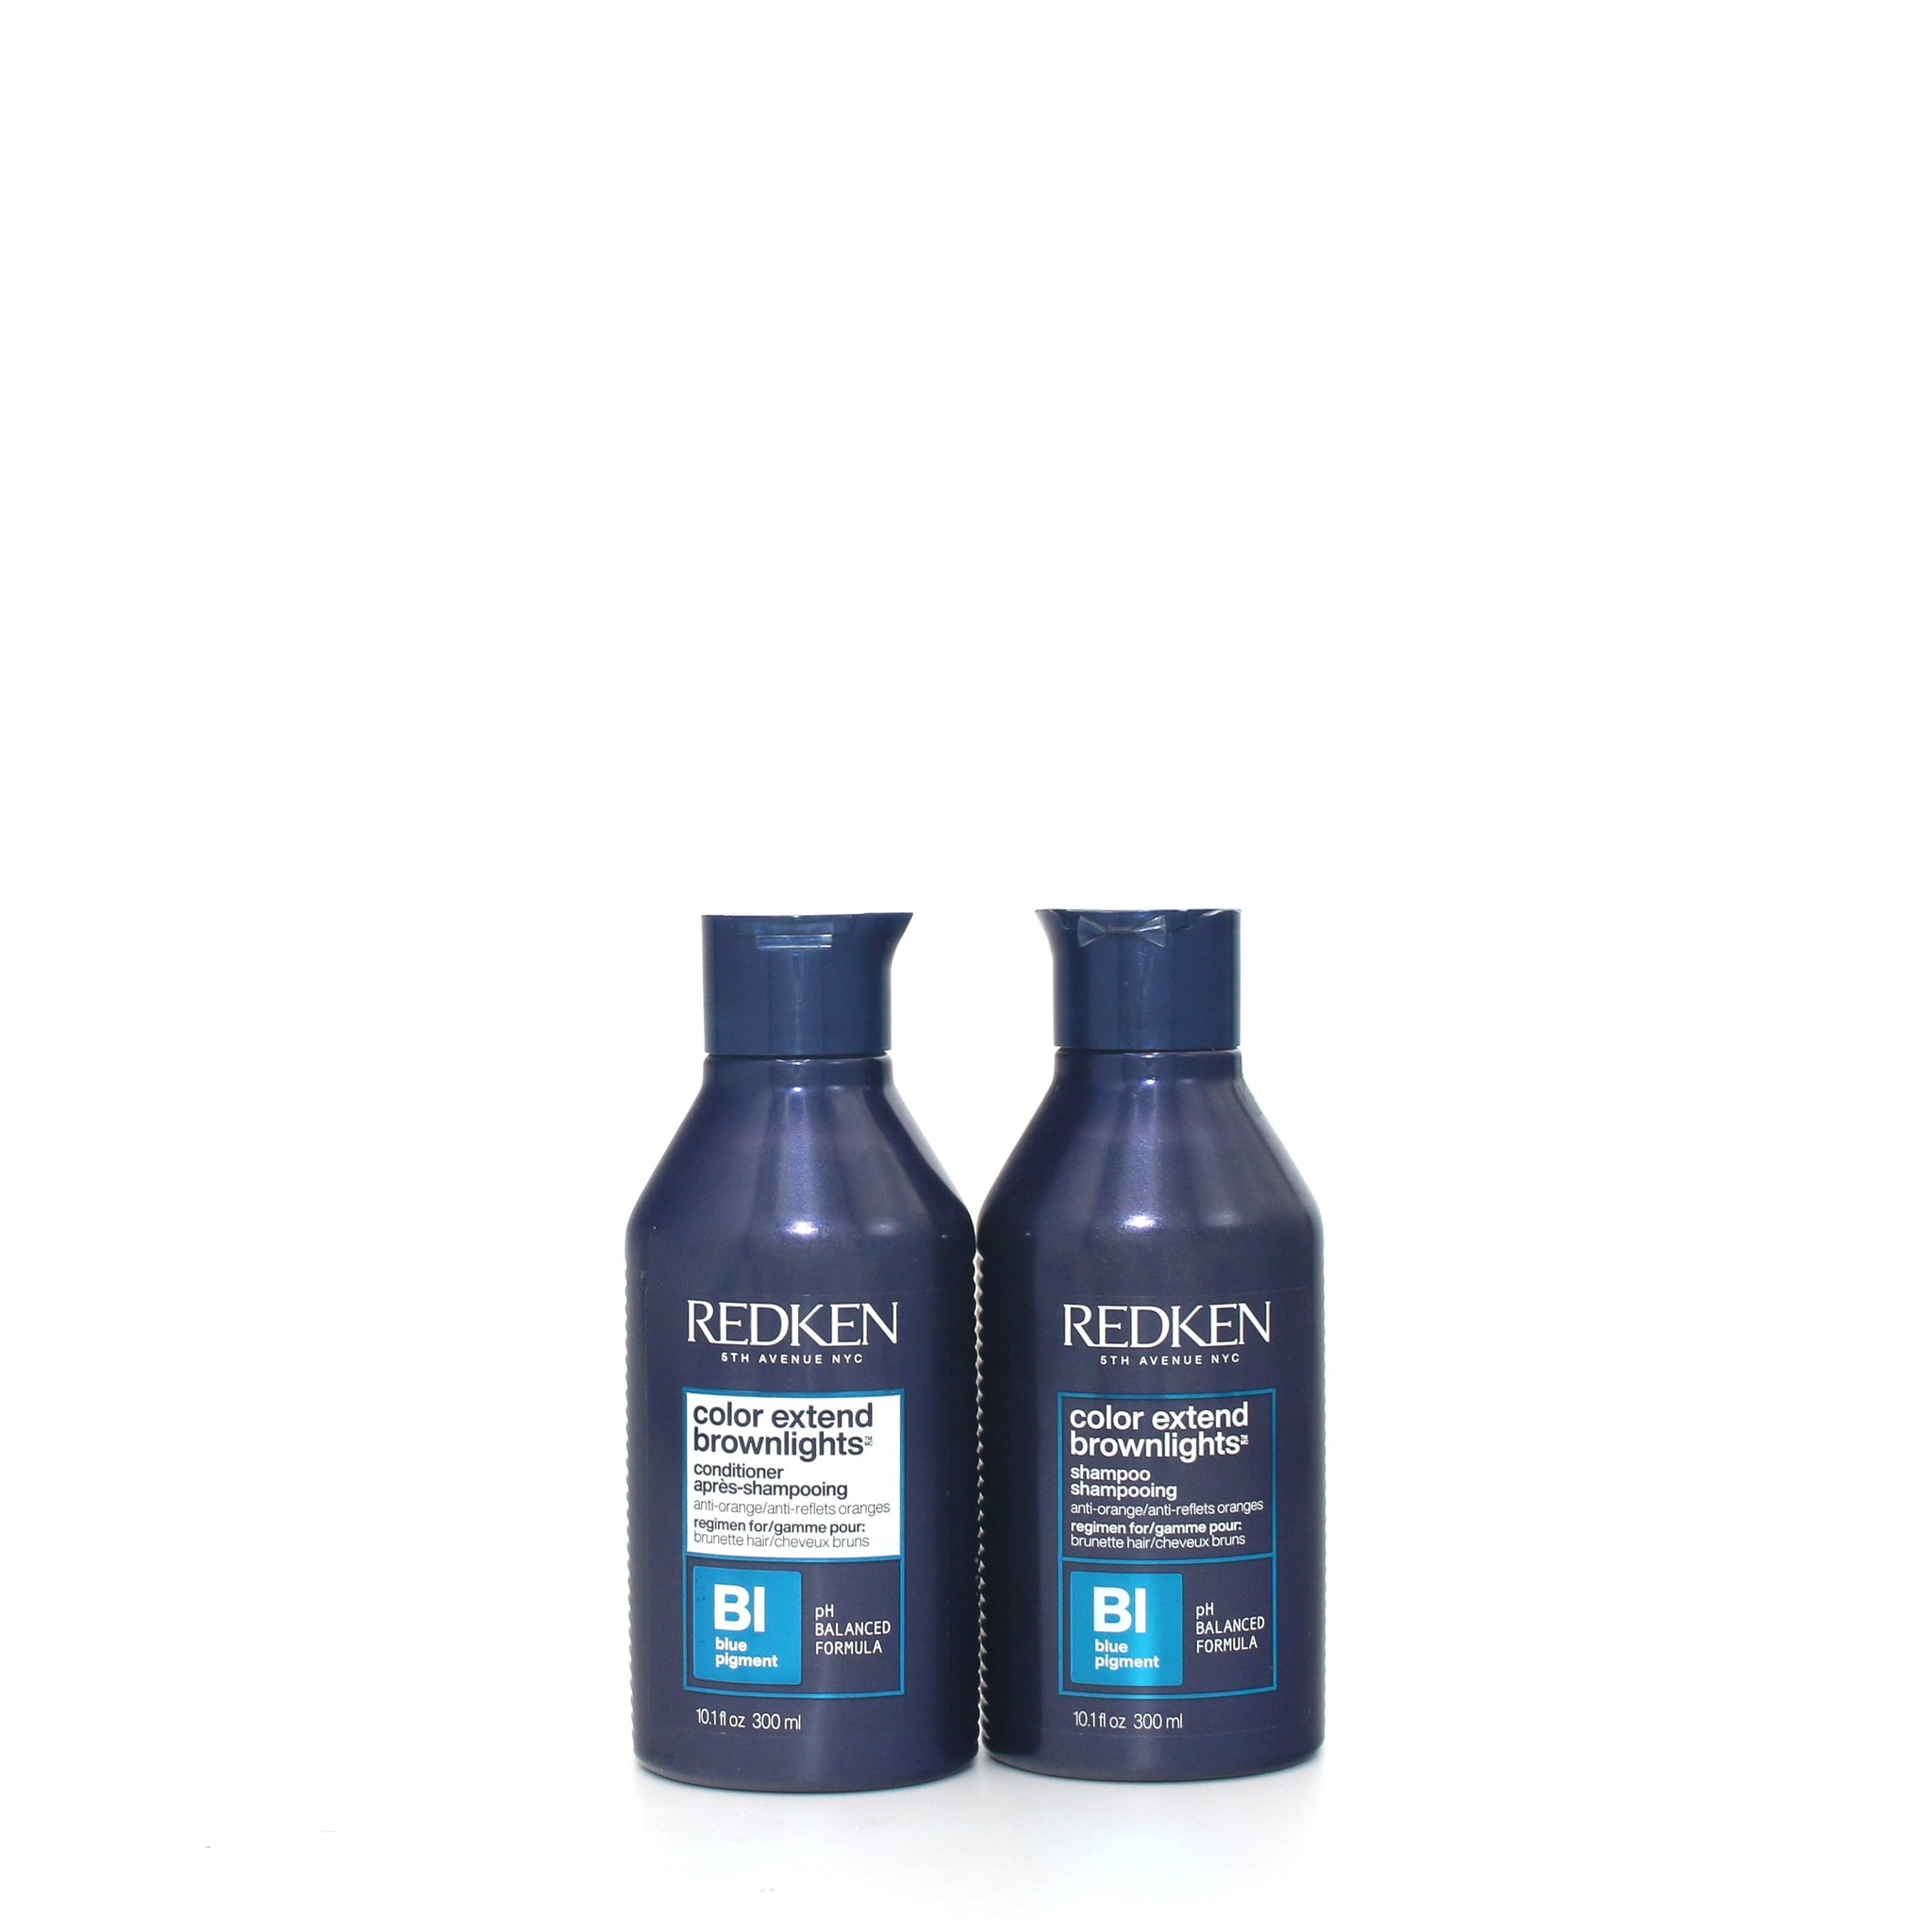 REDKEN Color Extend Brownlights Shampoo & Conditioner Duo10.1 oz